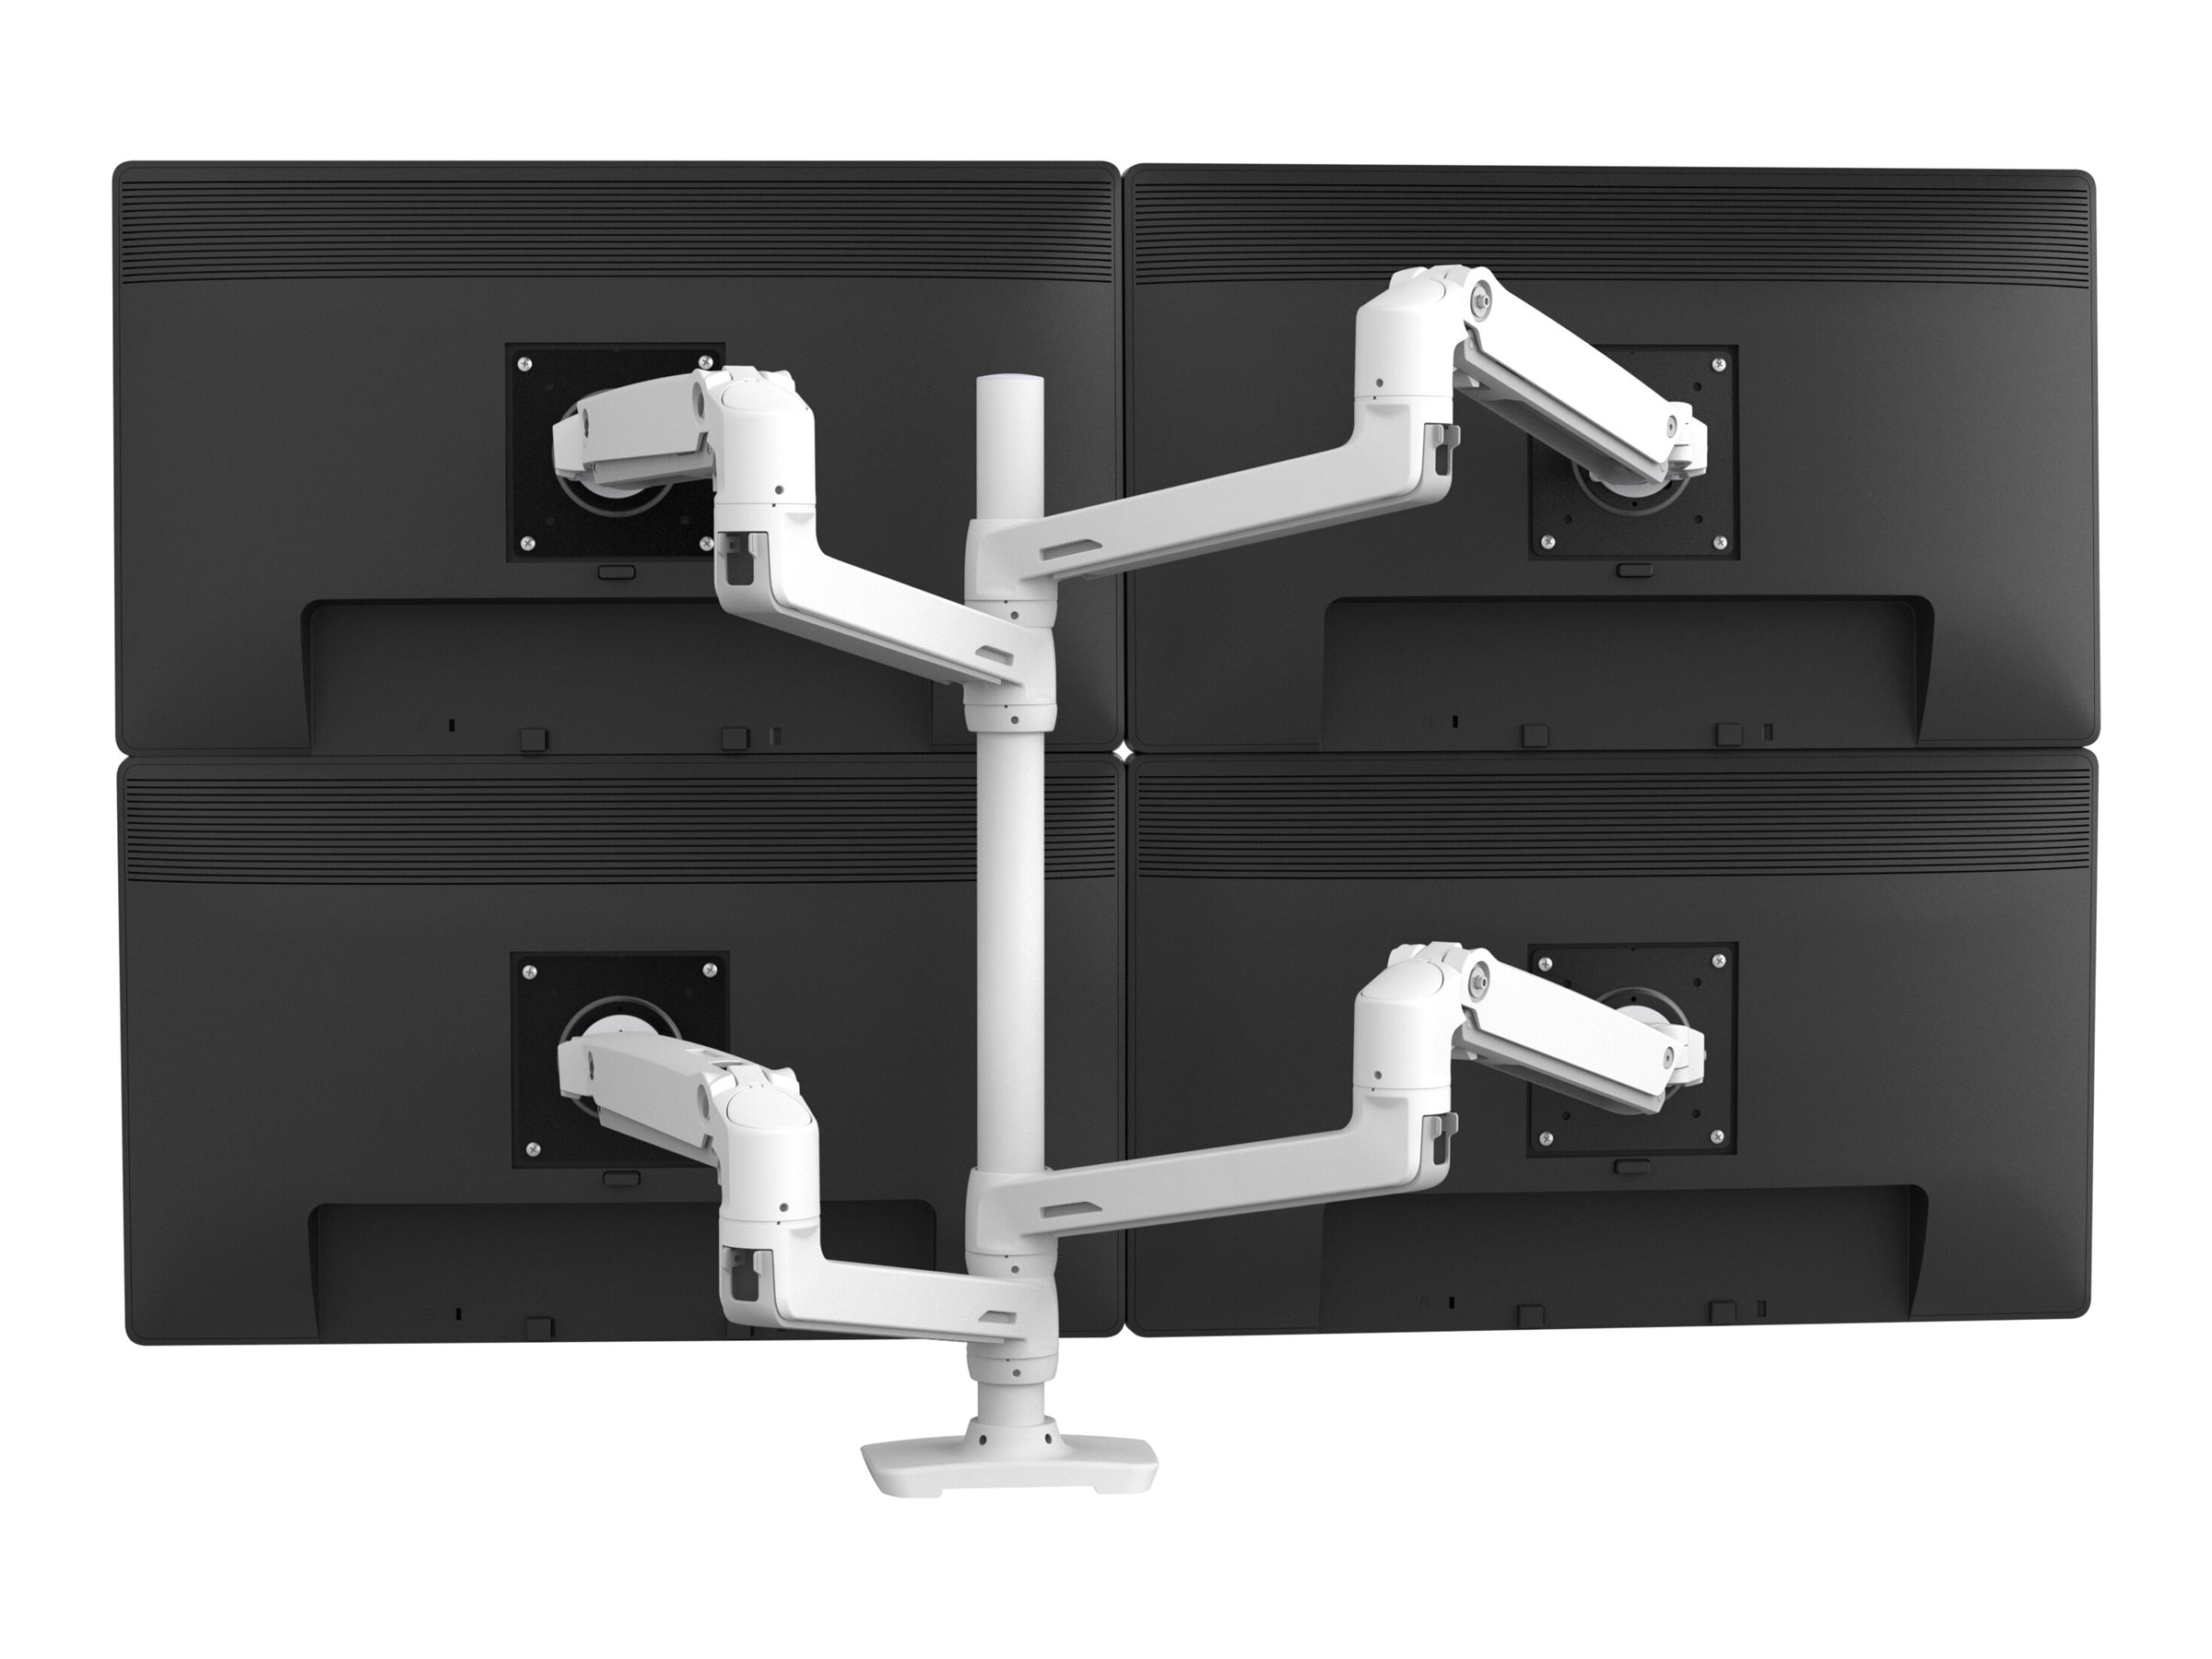 Ergotron LX - Kit de montage (poteau haut, bras d'empilage double) - pour 2 écrans LCD - aluminium - blanc - Taille d'écran : jusqu'à 40 pouces - montrable sur bureau - 45-509-216 - Accessoires pour écran